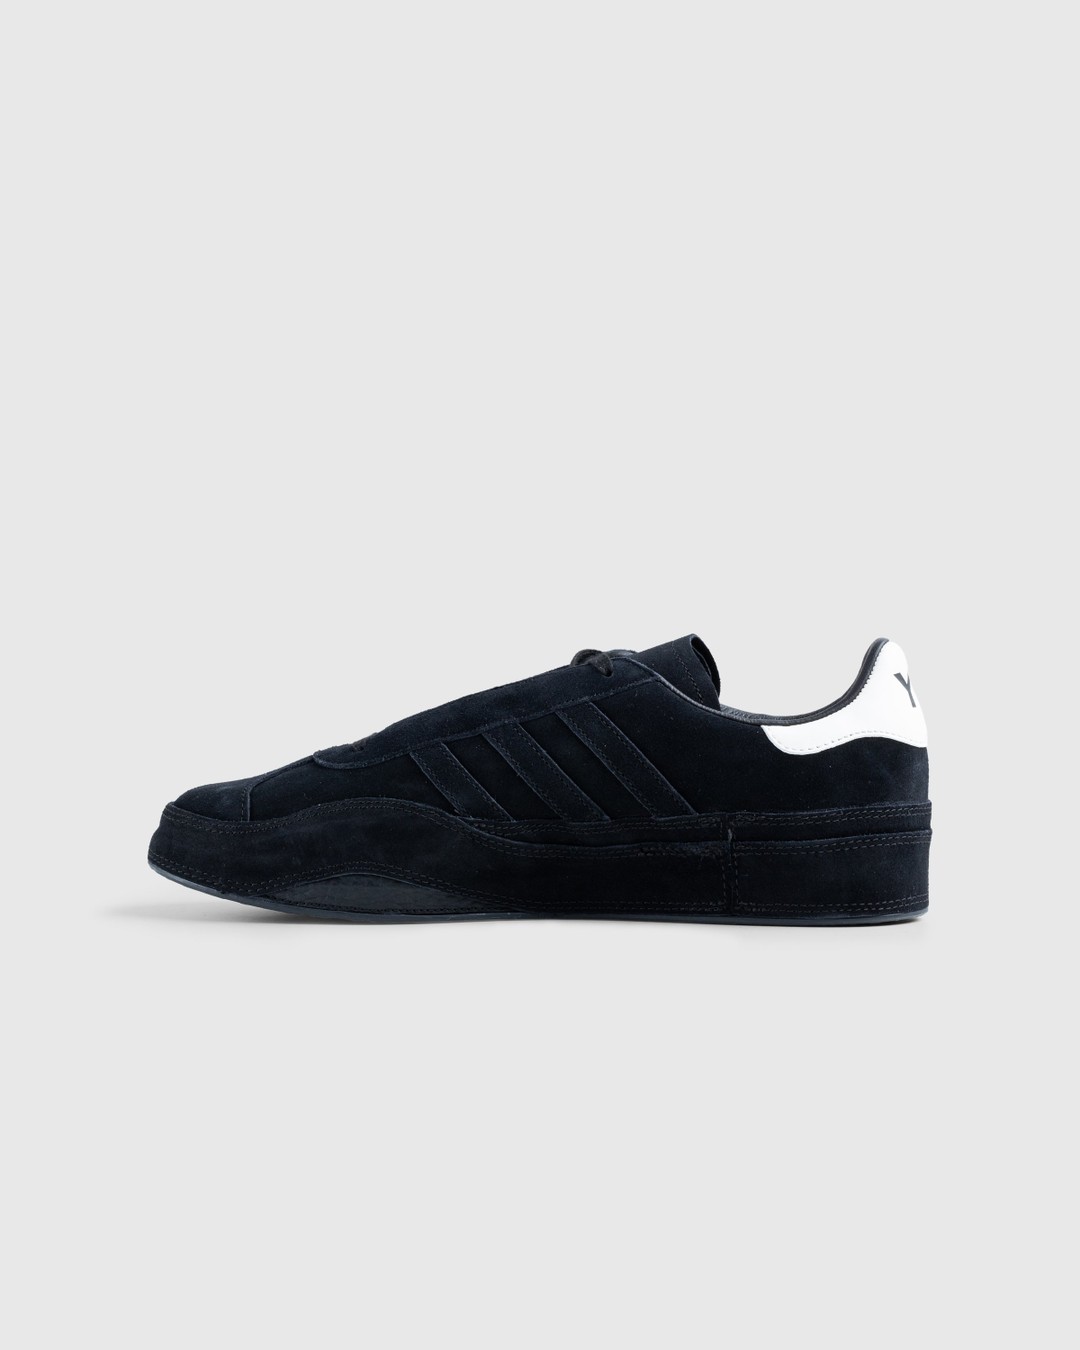 Y-3 – Gazelle Black - Sneakers - Black - Image 2